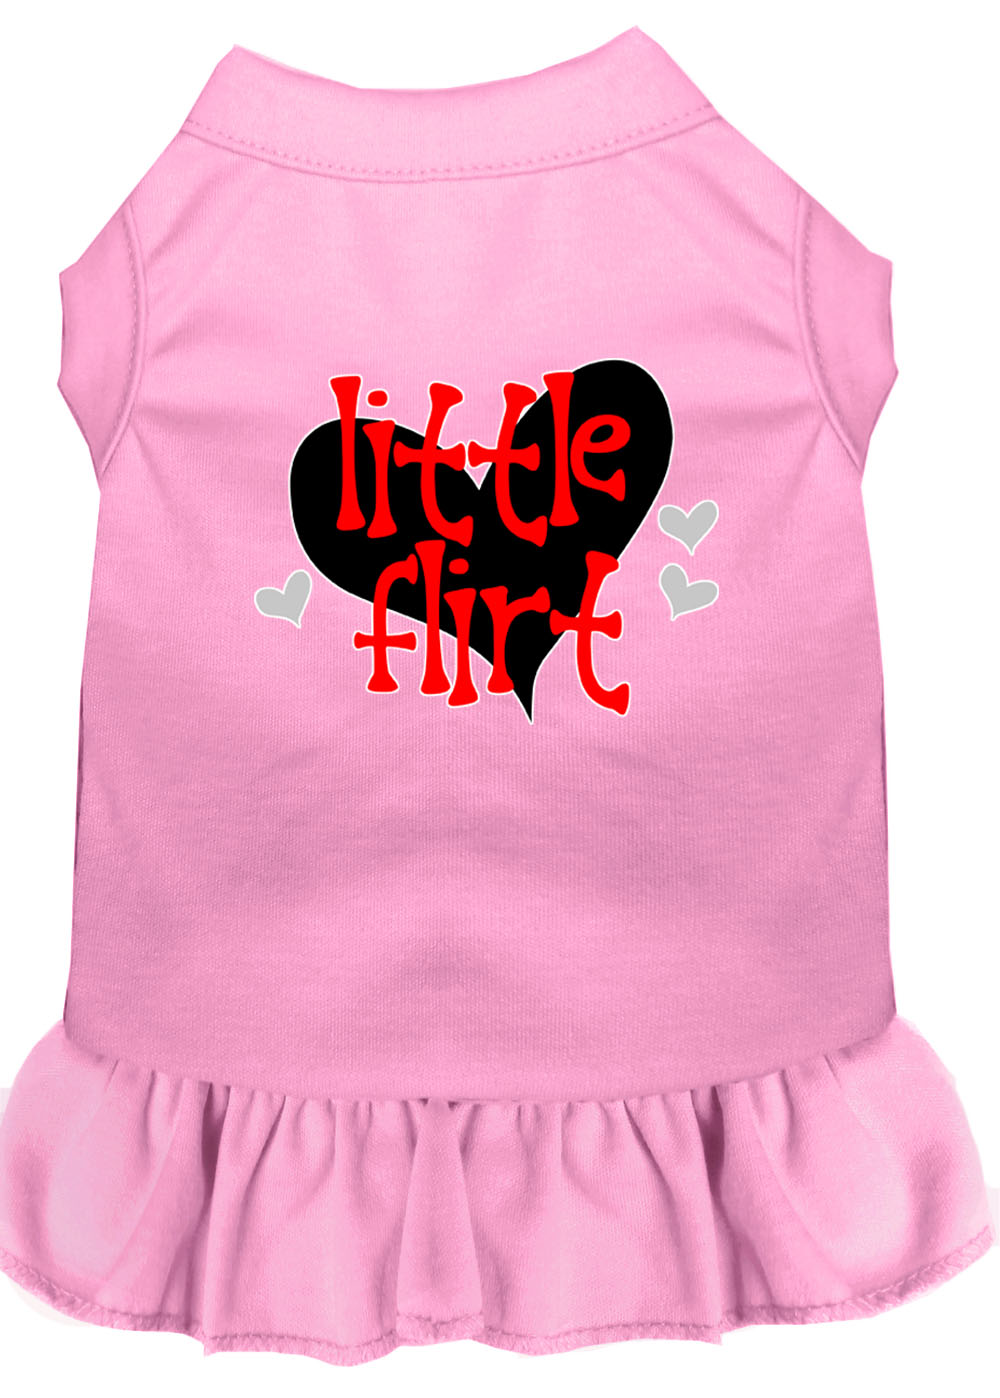 Little Flirt Screen Print Dog Dress Light Pink Sm